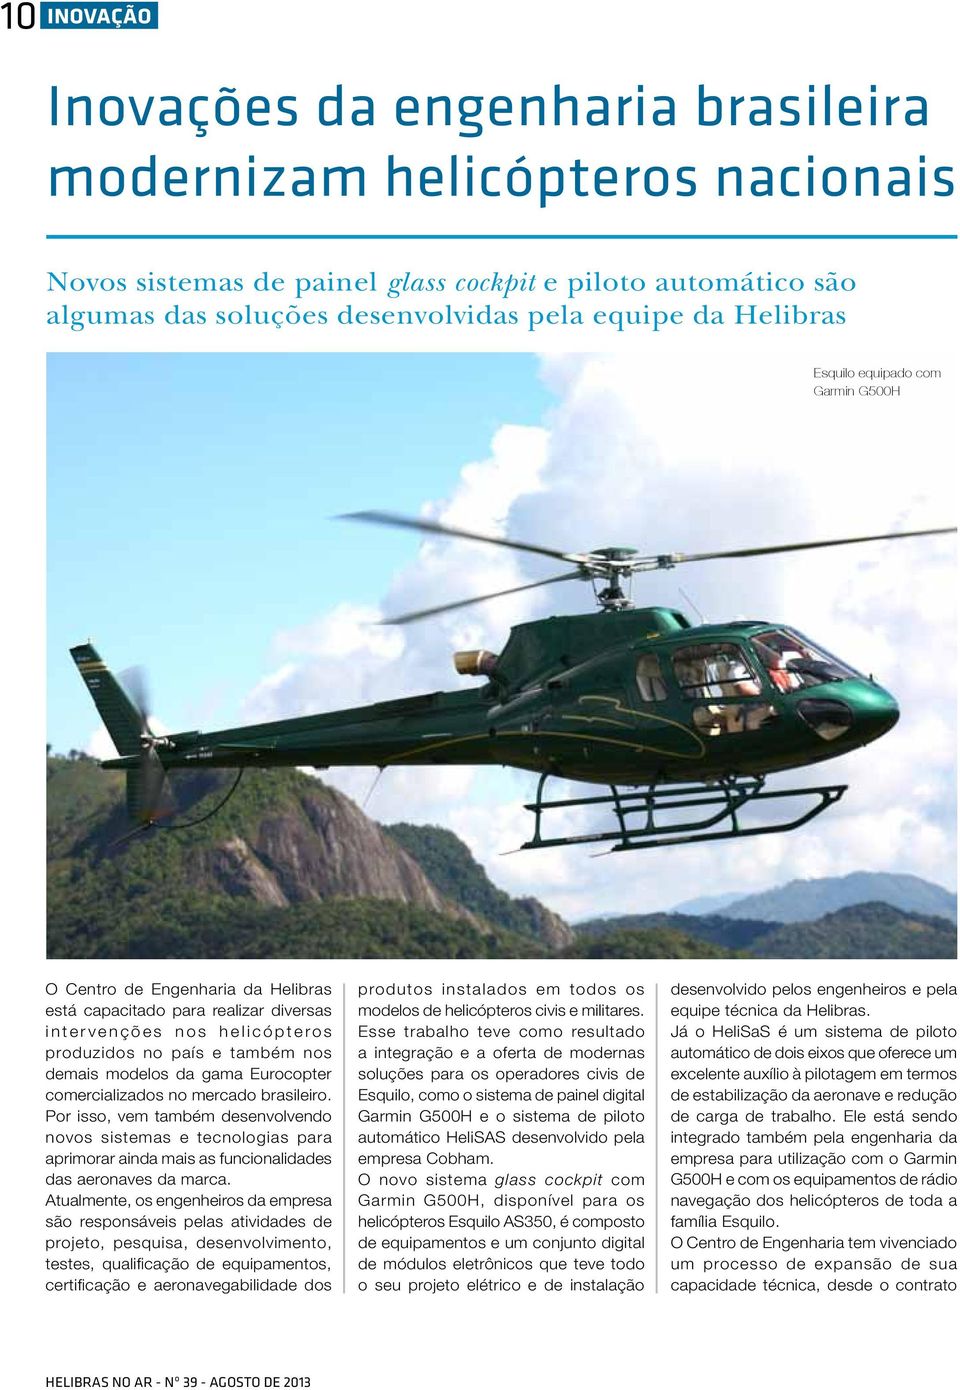 gama Eurocopter comercializados no mercado brasileiro. Por isso, vem também desenvolvendo novos sistemas e tecnologias para aprimorar ainda mais as funcionalidades das aeronaves da marca.